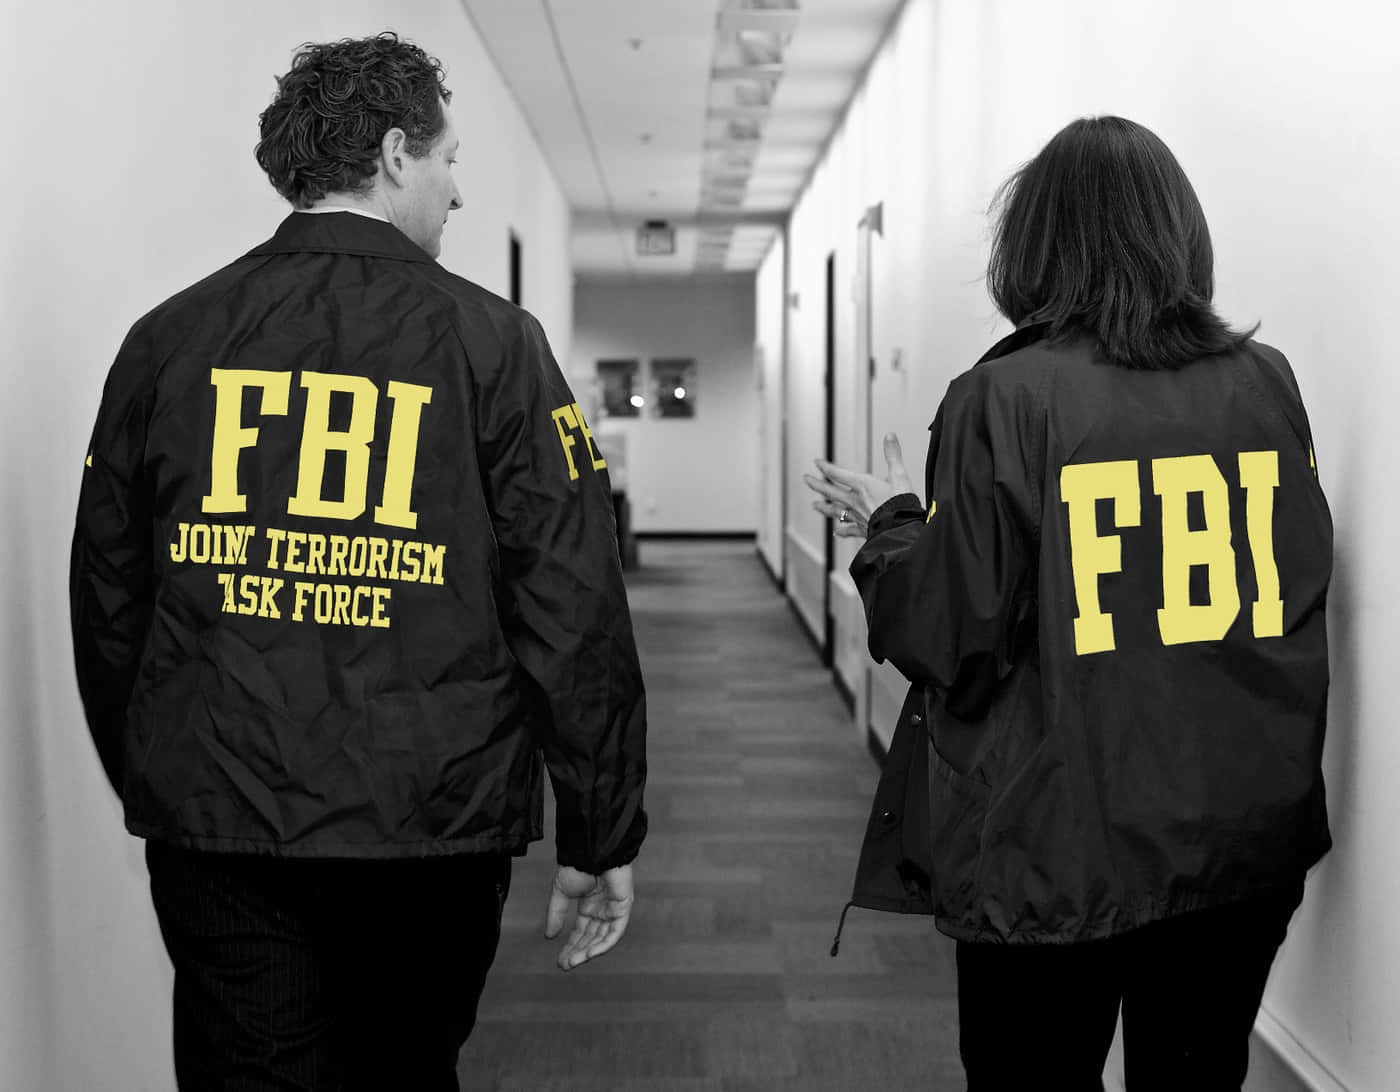 Two People In Fbi Jackets Walking Down A Hallway